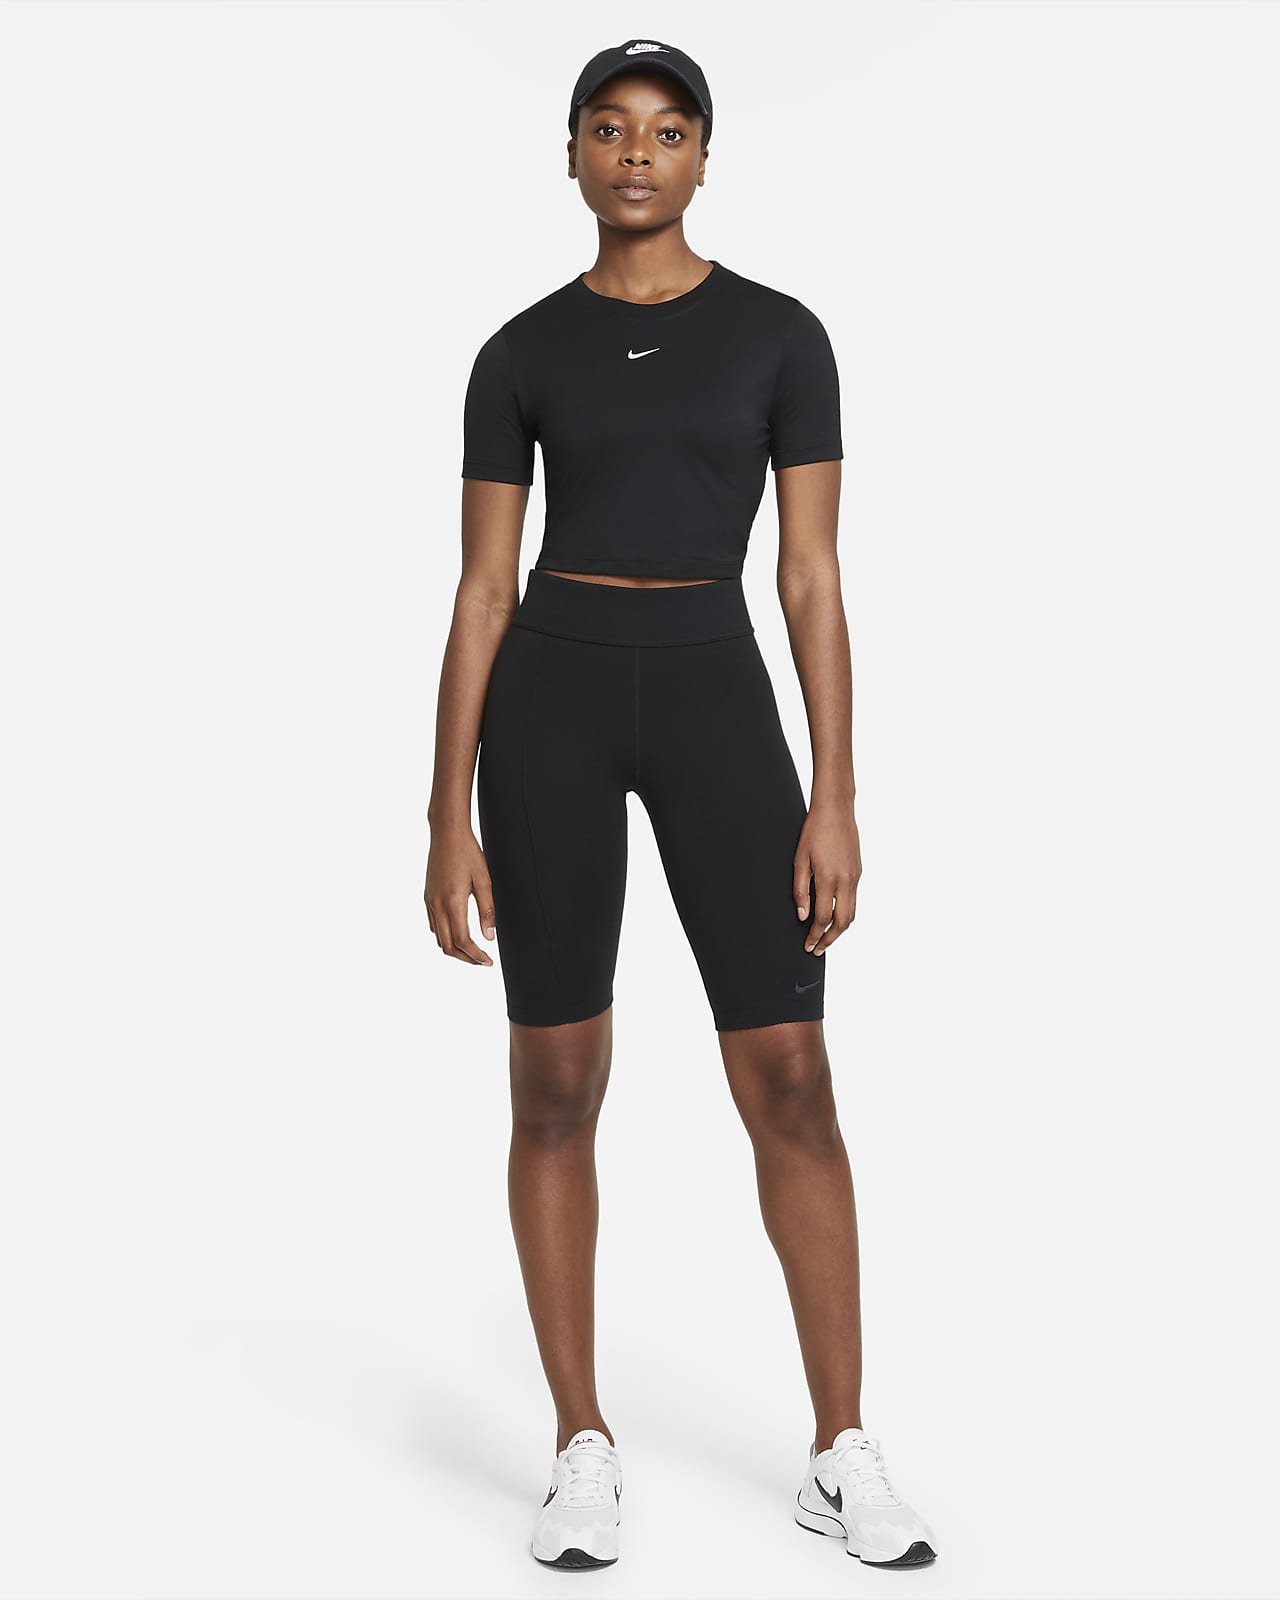 basketbal Ooit Roei uit Nike Sportswear Essential Women's Crop-Top. Nike HR